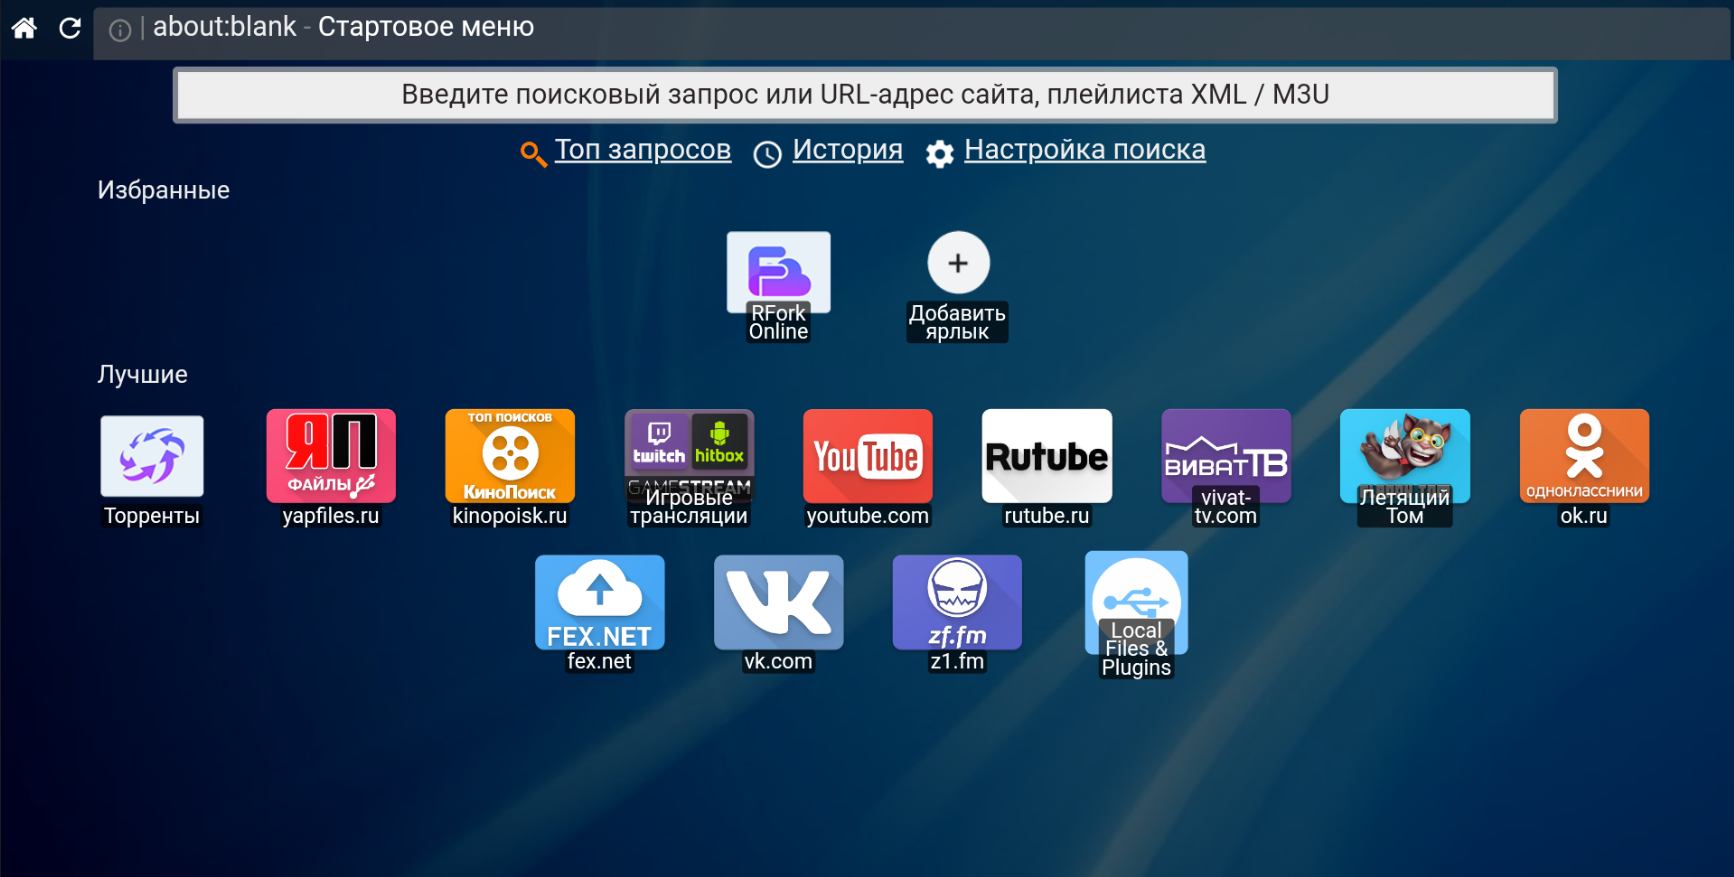 Ue75h6400ak не могу загрузить приложение из самсунг аппс / samsung-help.ru